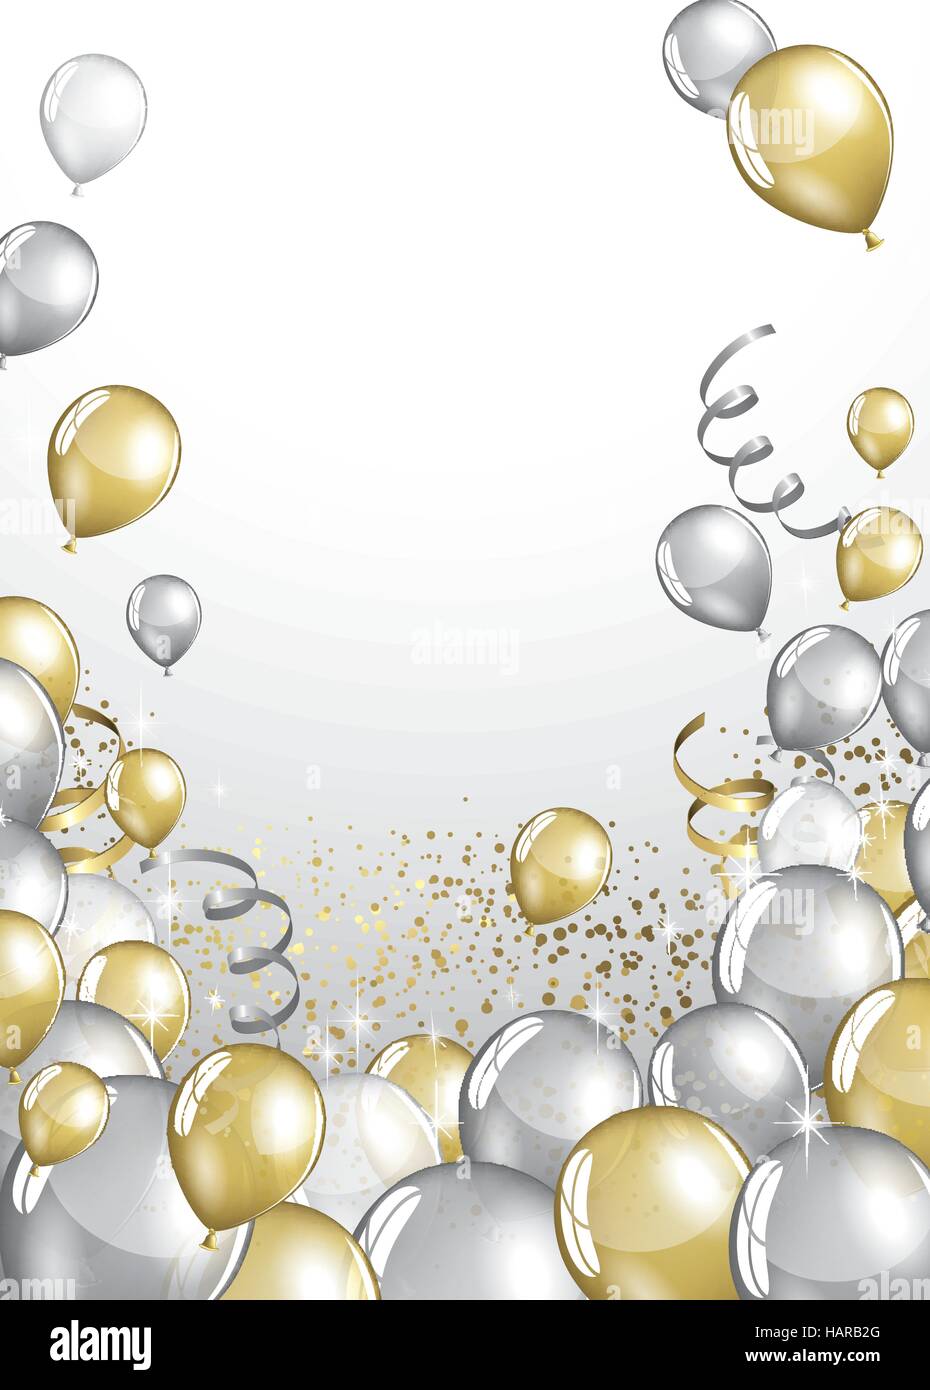 Palloncini glitterati Immagini Vettoriali Stock - Alamy